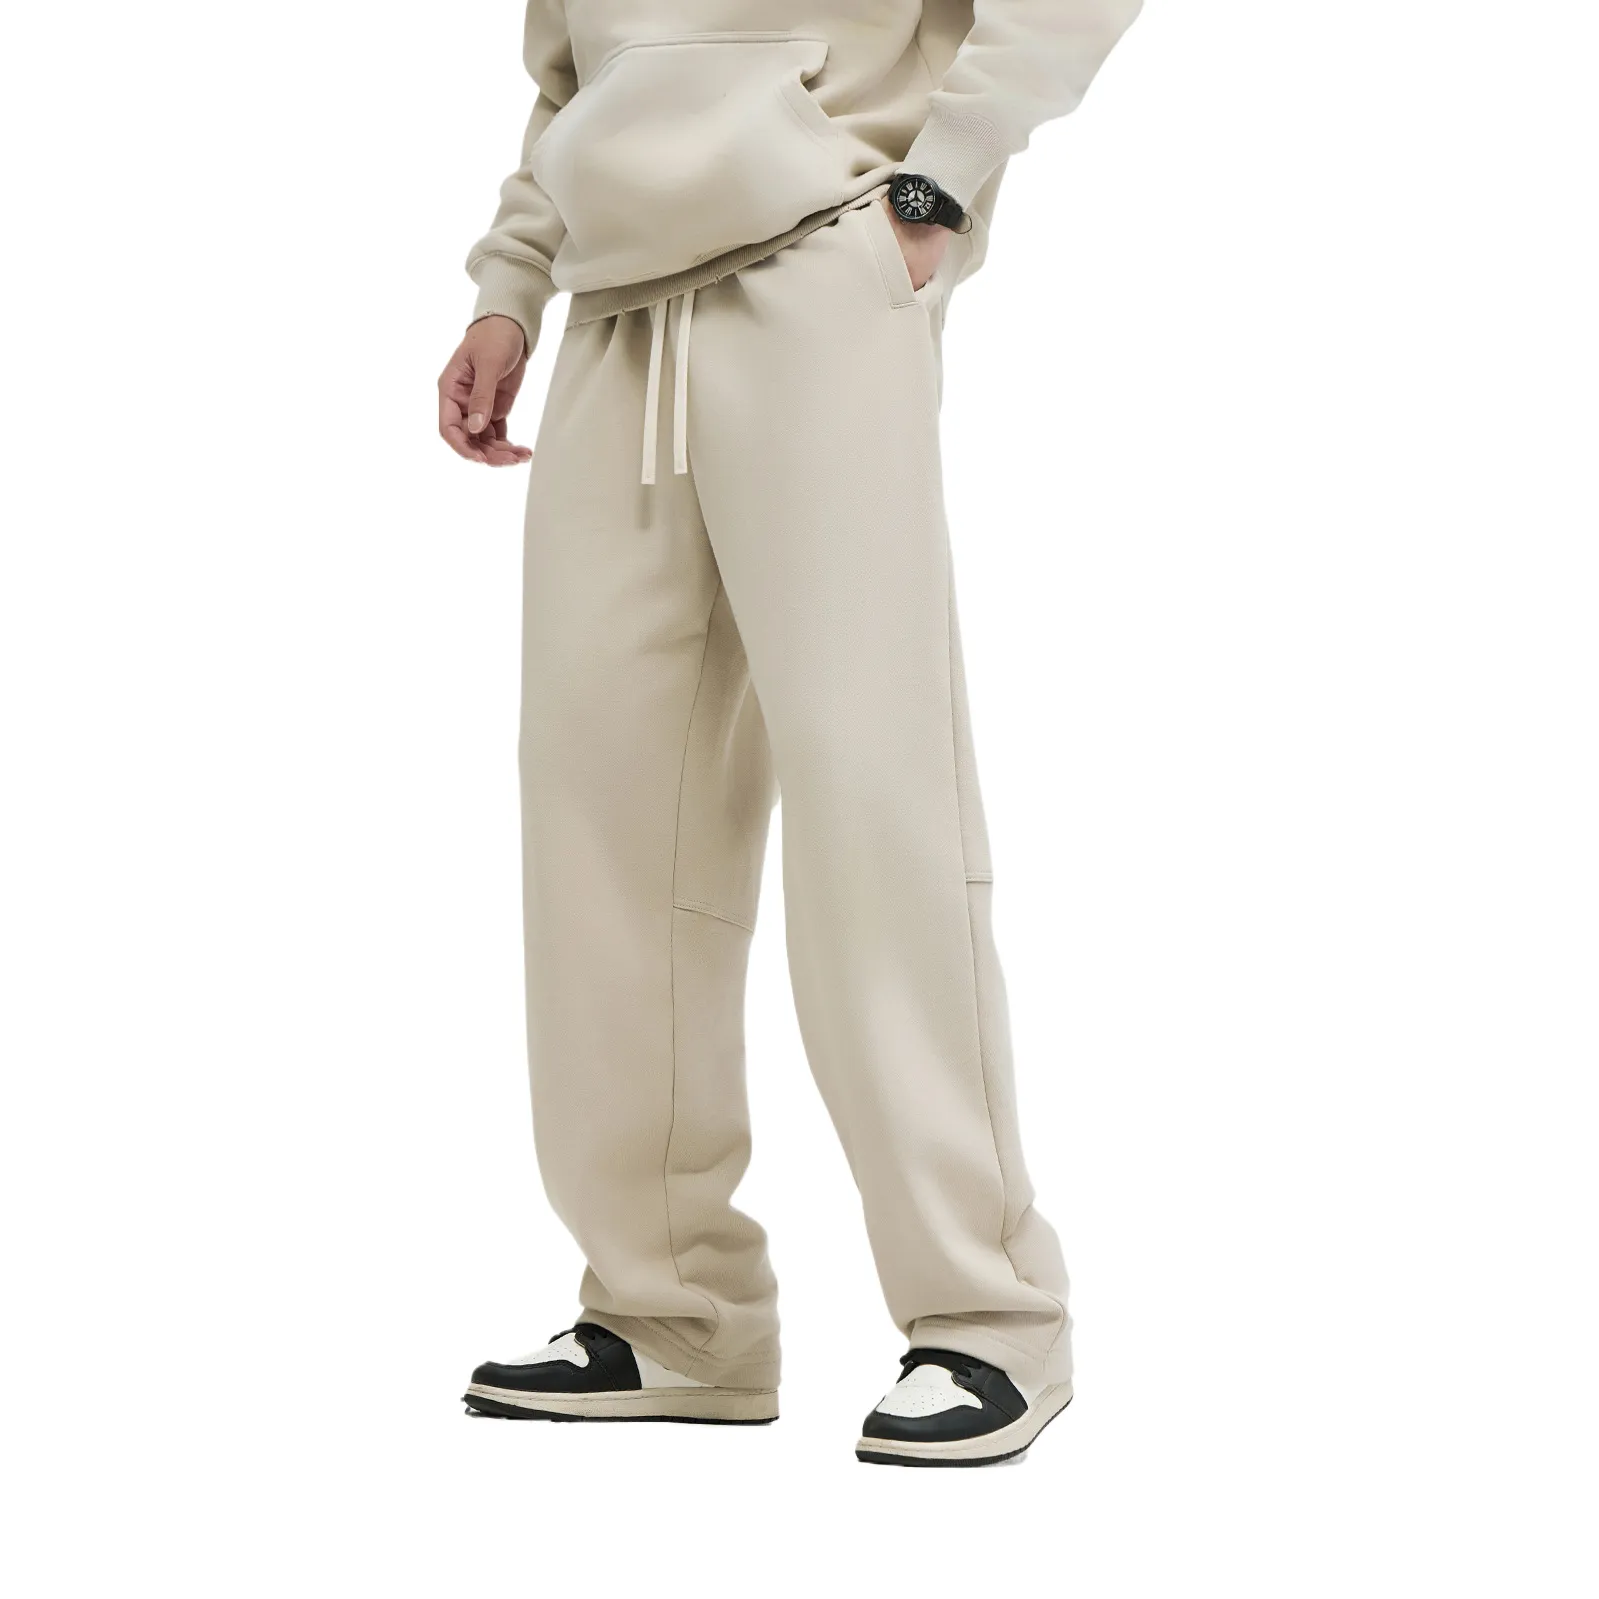 Özel Logo yüksek kalite Sweatpants ve Hoodie seti spor elbise eşofman takımları pantolon erkekler için iki parçalı Set koşu eşofman